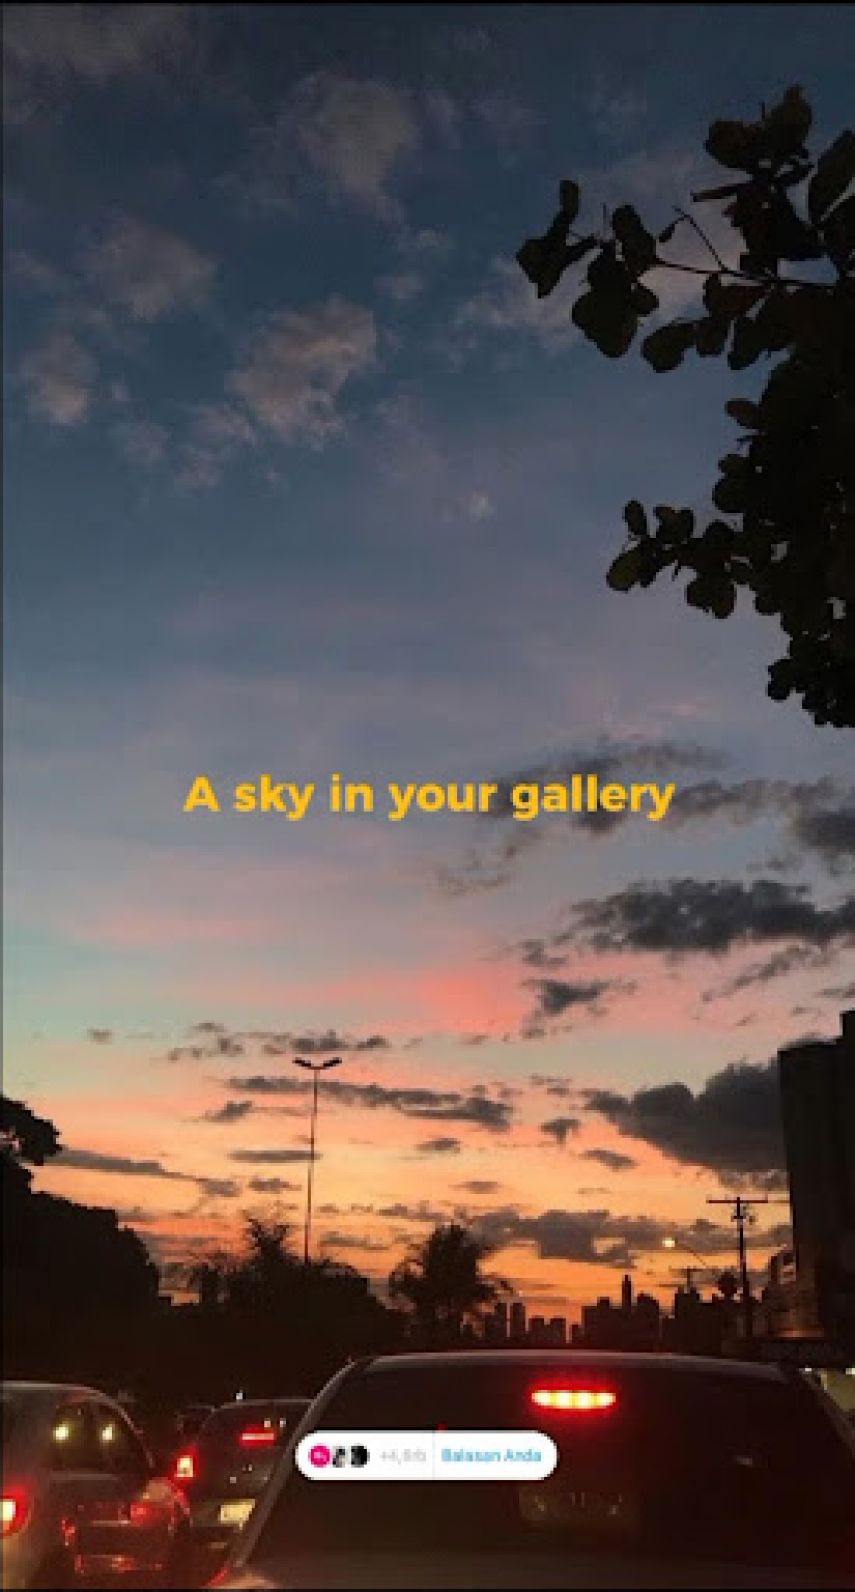 Mengenal Tren dan Cara Membuat Video “A Sky In Your Gallery” yang Sedang Viral di Media Sosial